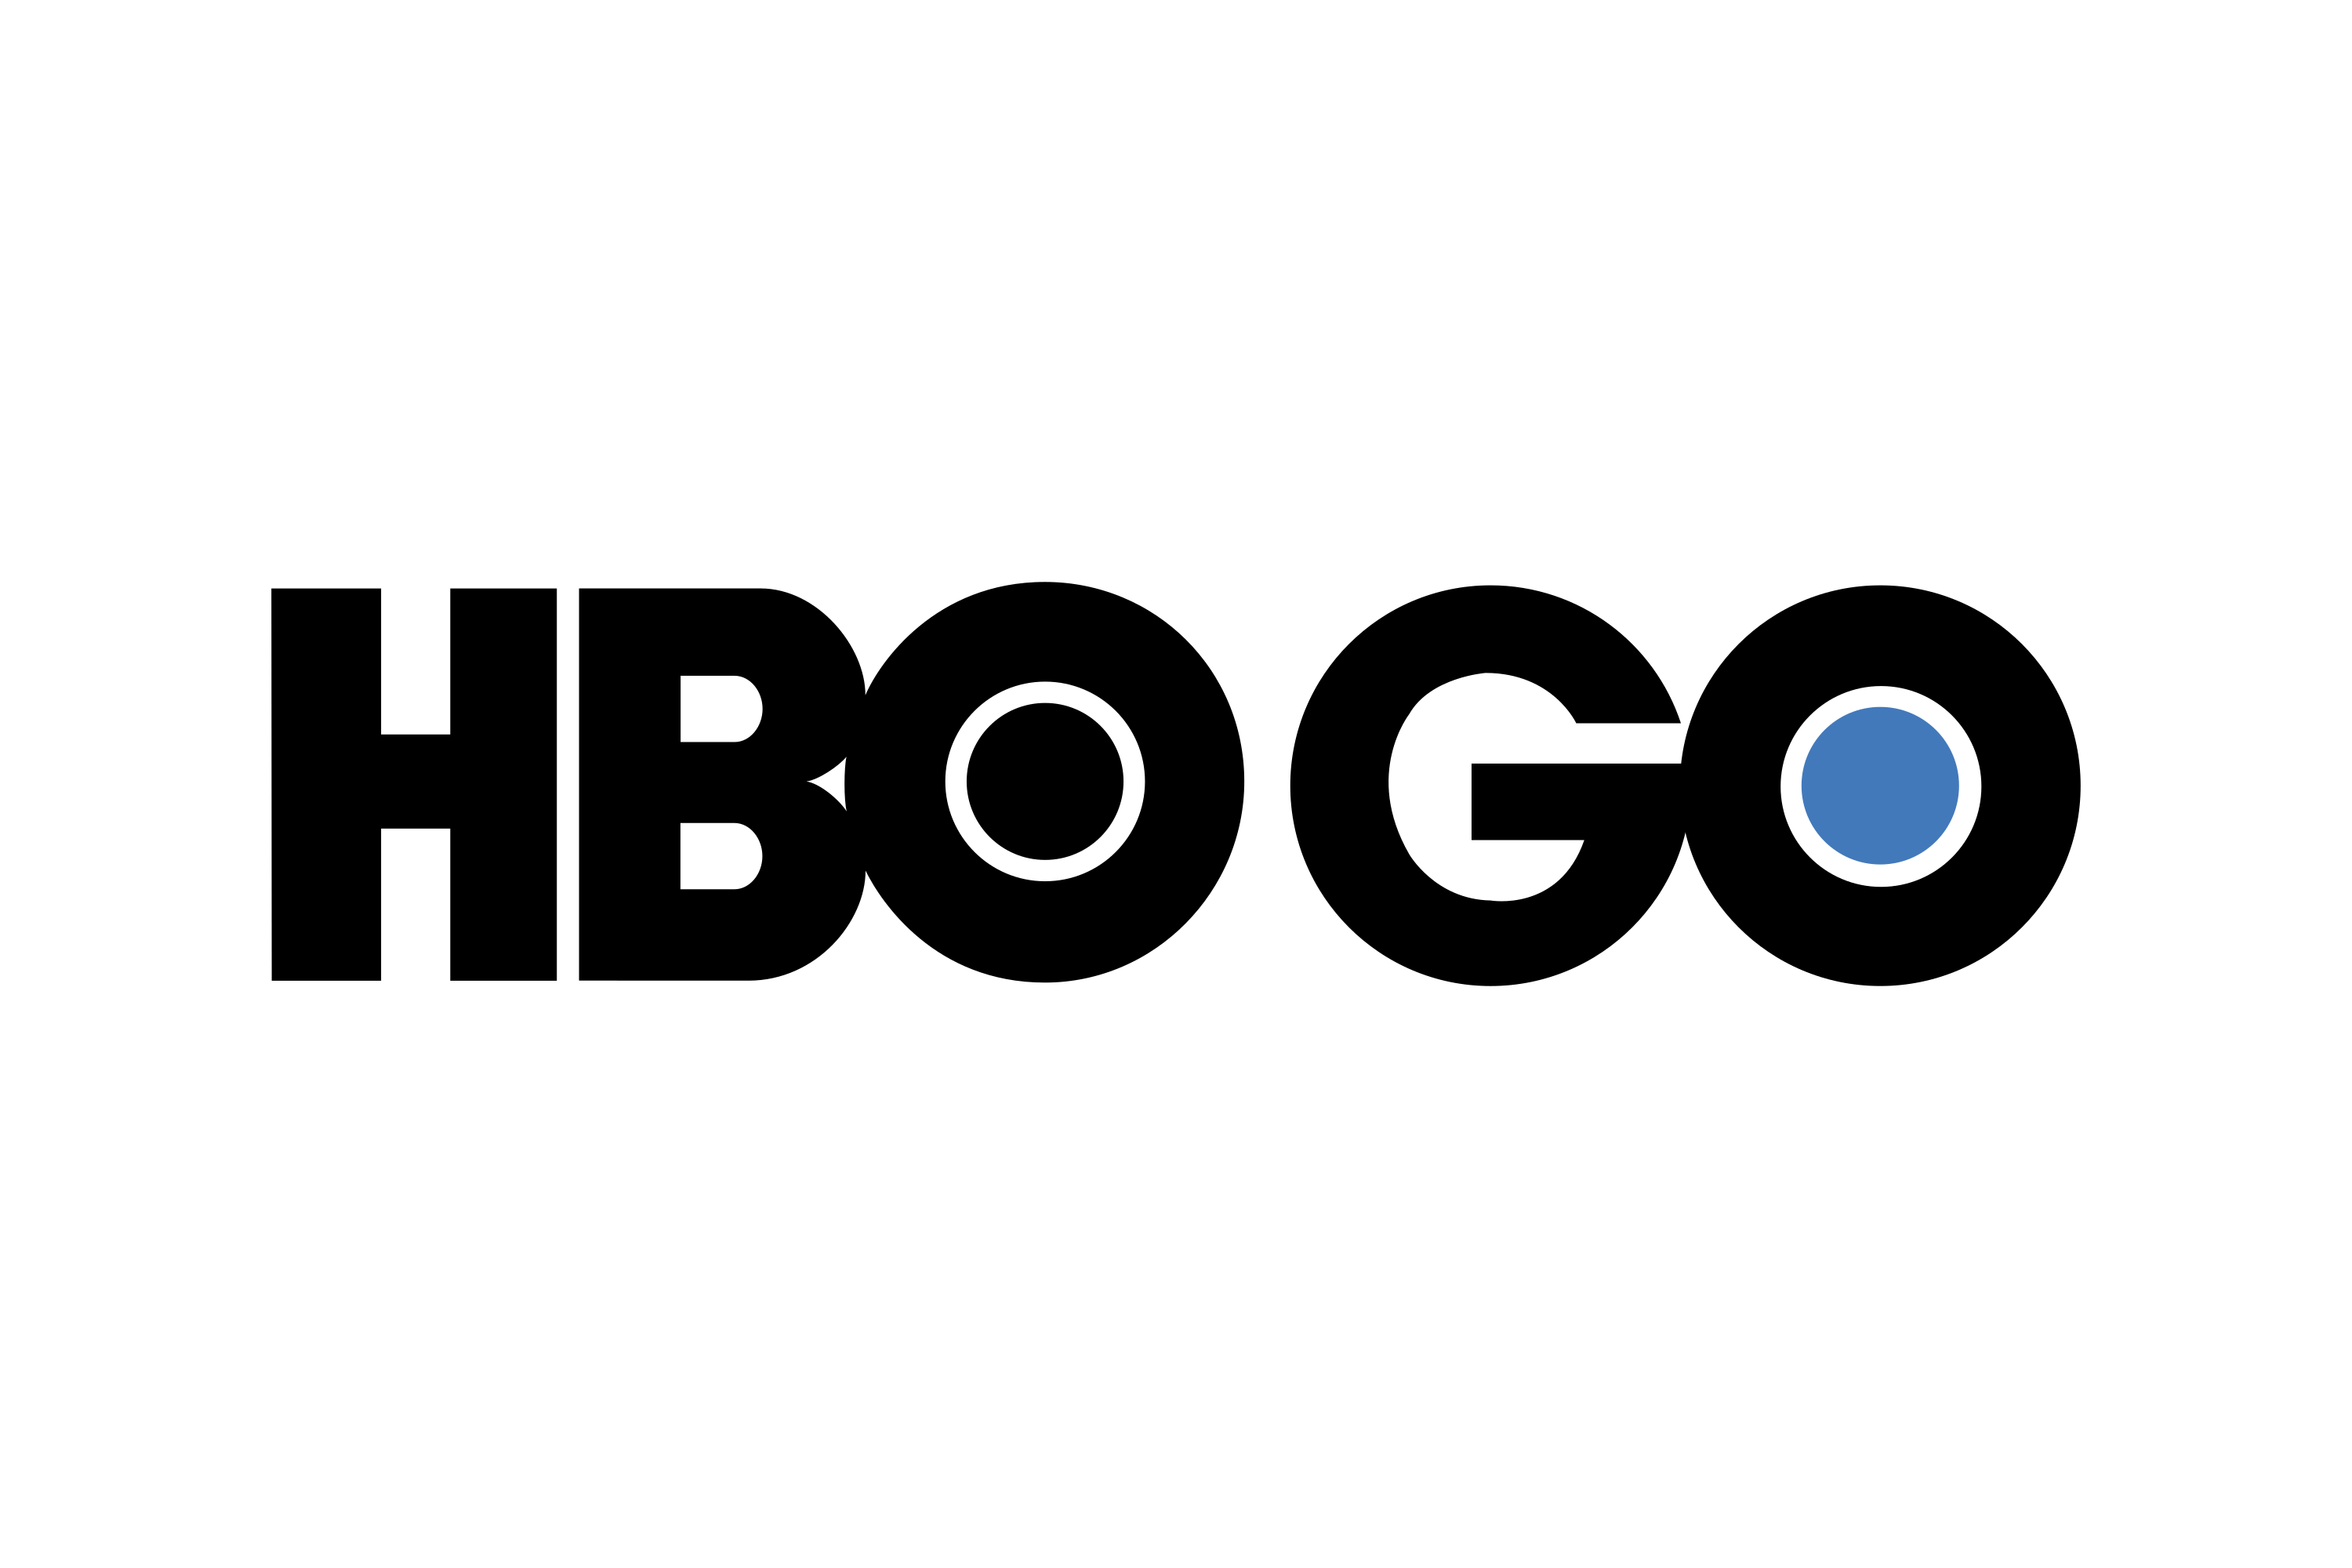 Logo Hbo Go Png - KibrisPDR